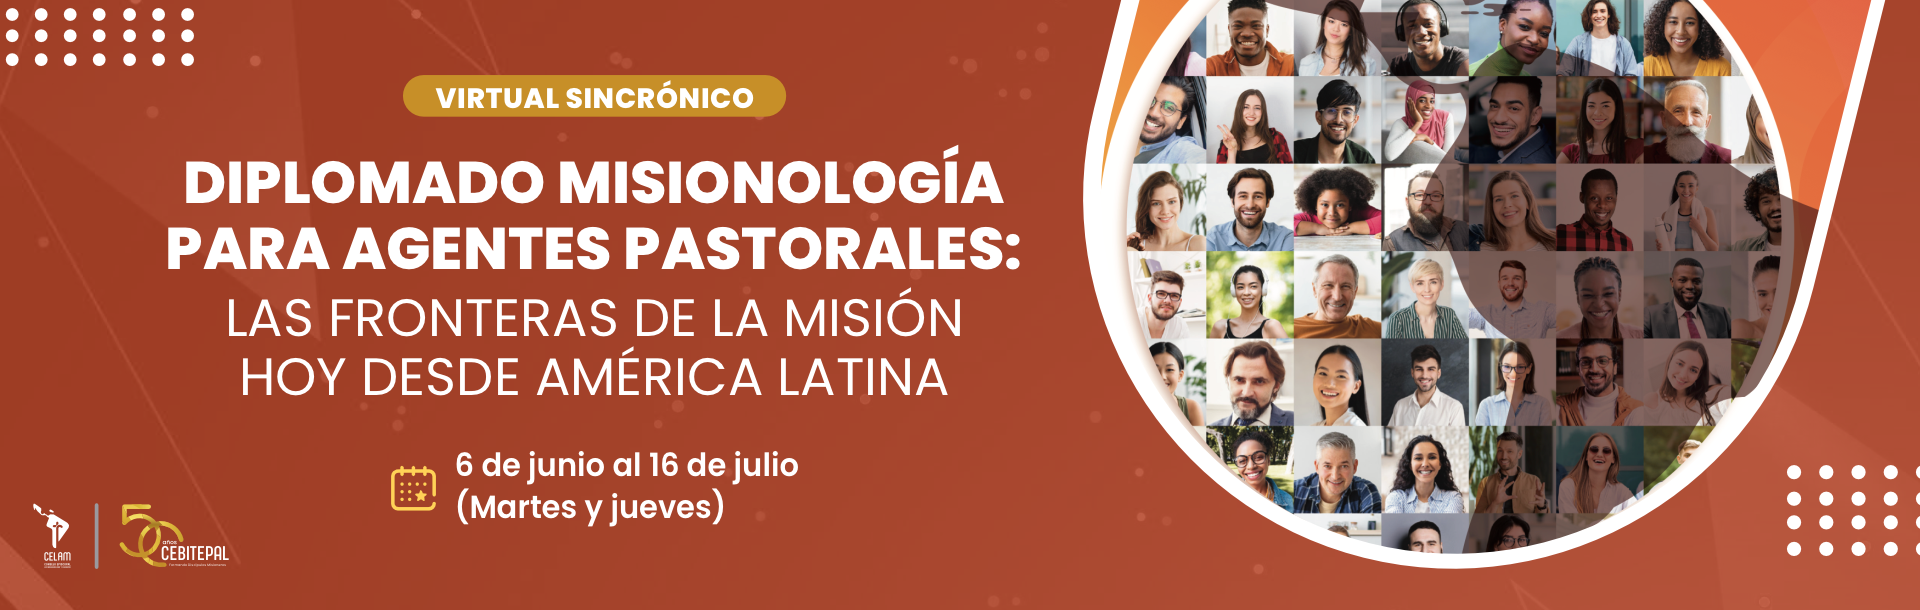 Misionología para Agentes Pastorales: Las fronteras de la misión hoy desde América latina 